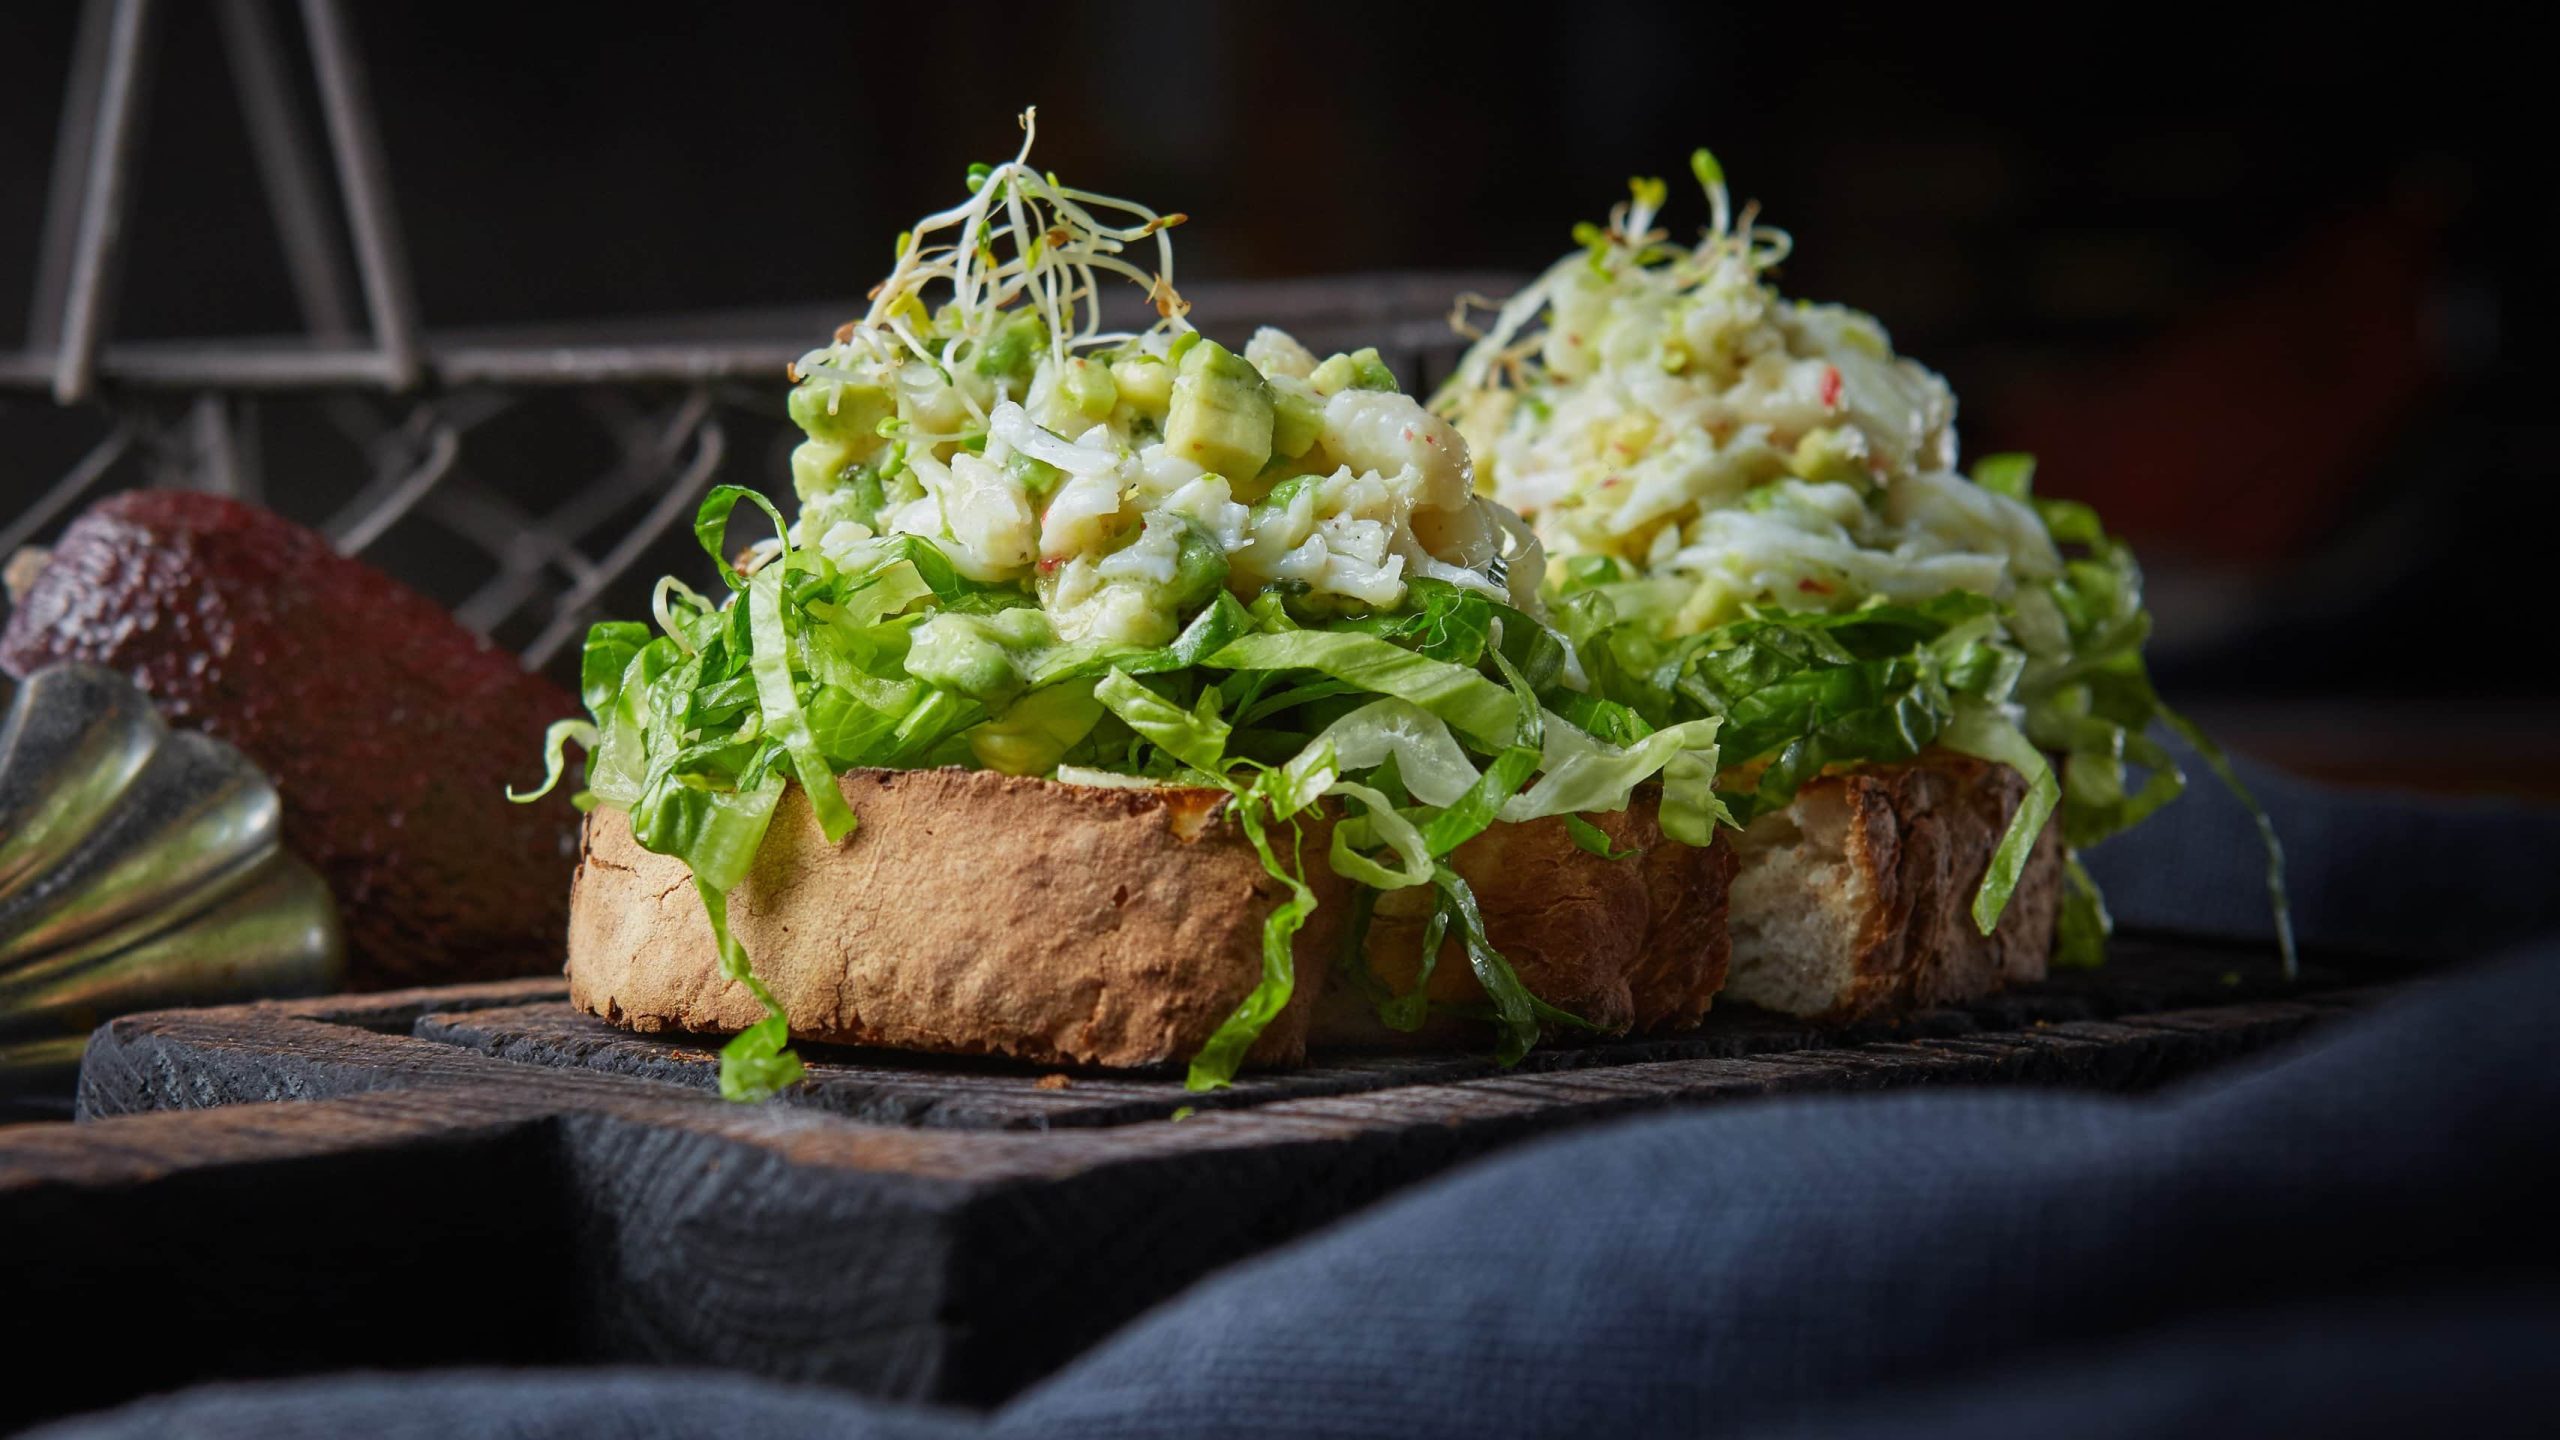 Ein dunkler Hinter-und Untergrund. In der Mitte das Sandwich mit dem Avocado-Garnelen-Eiersalat seitlich fotografiert.